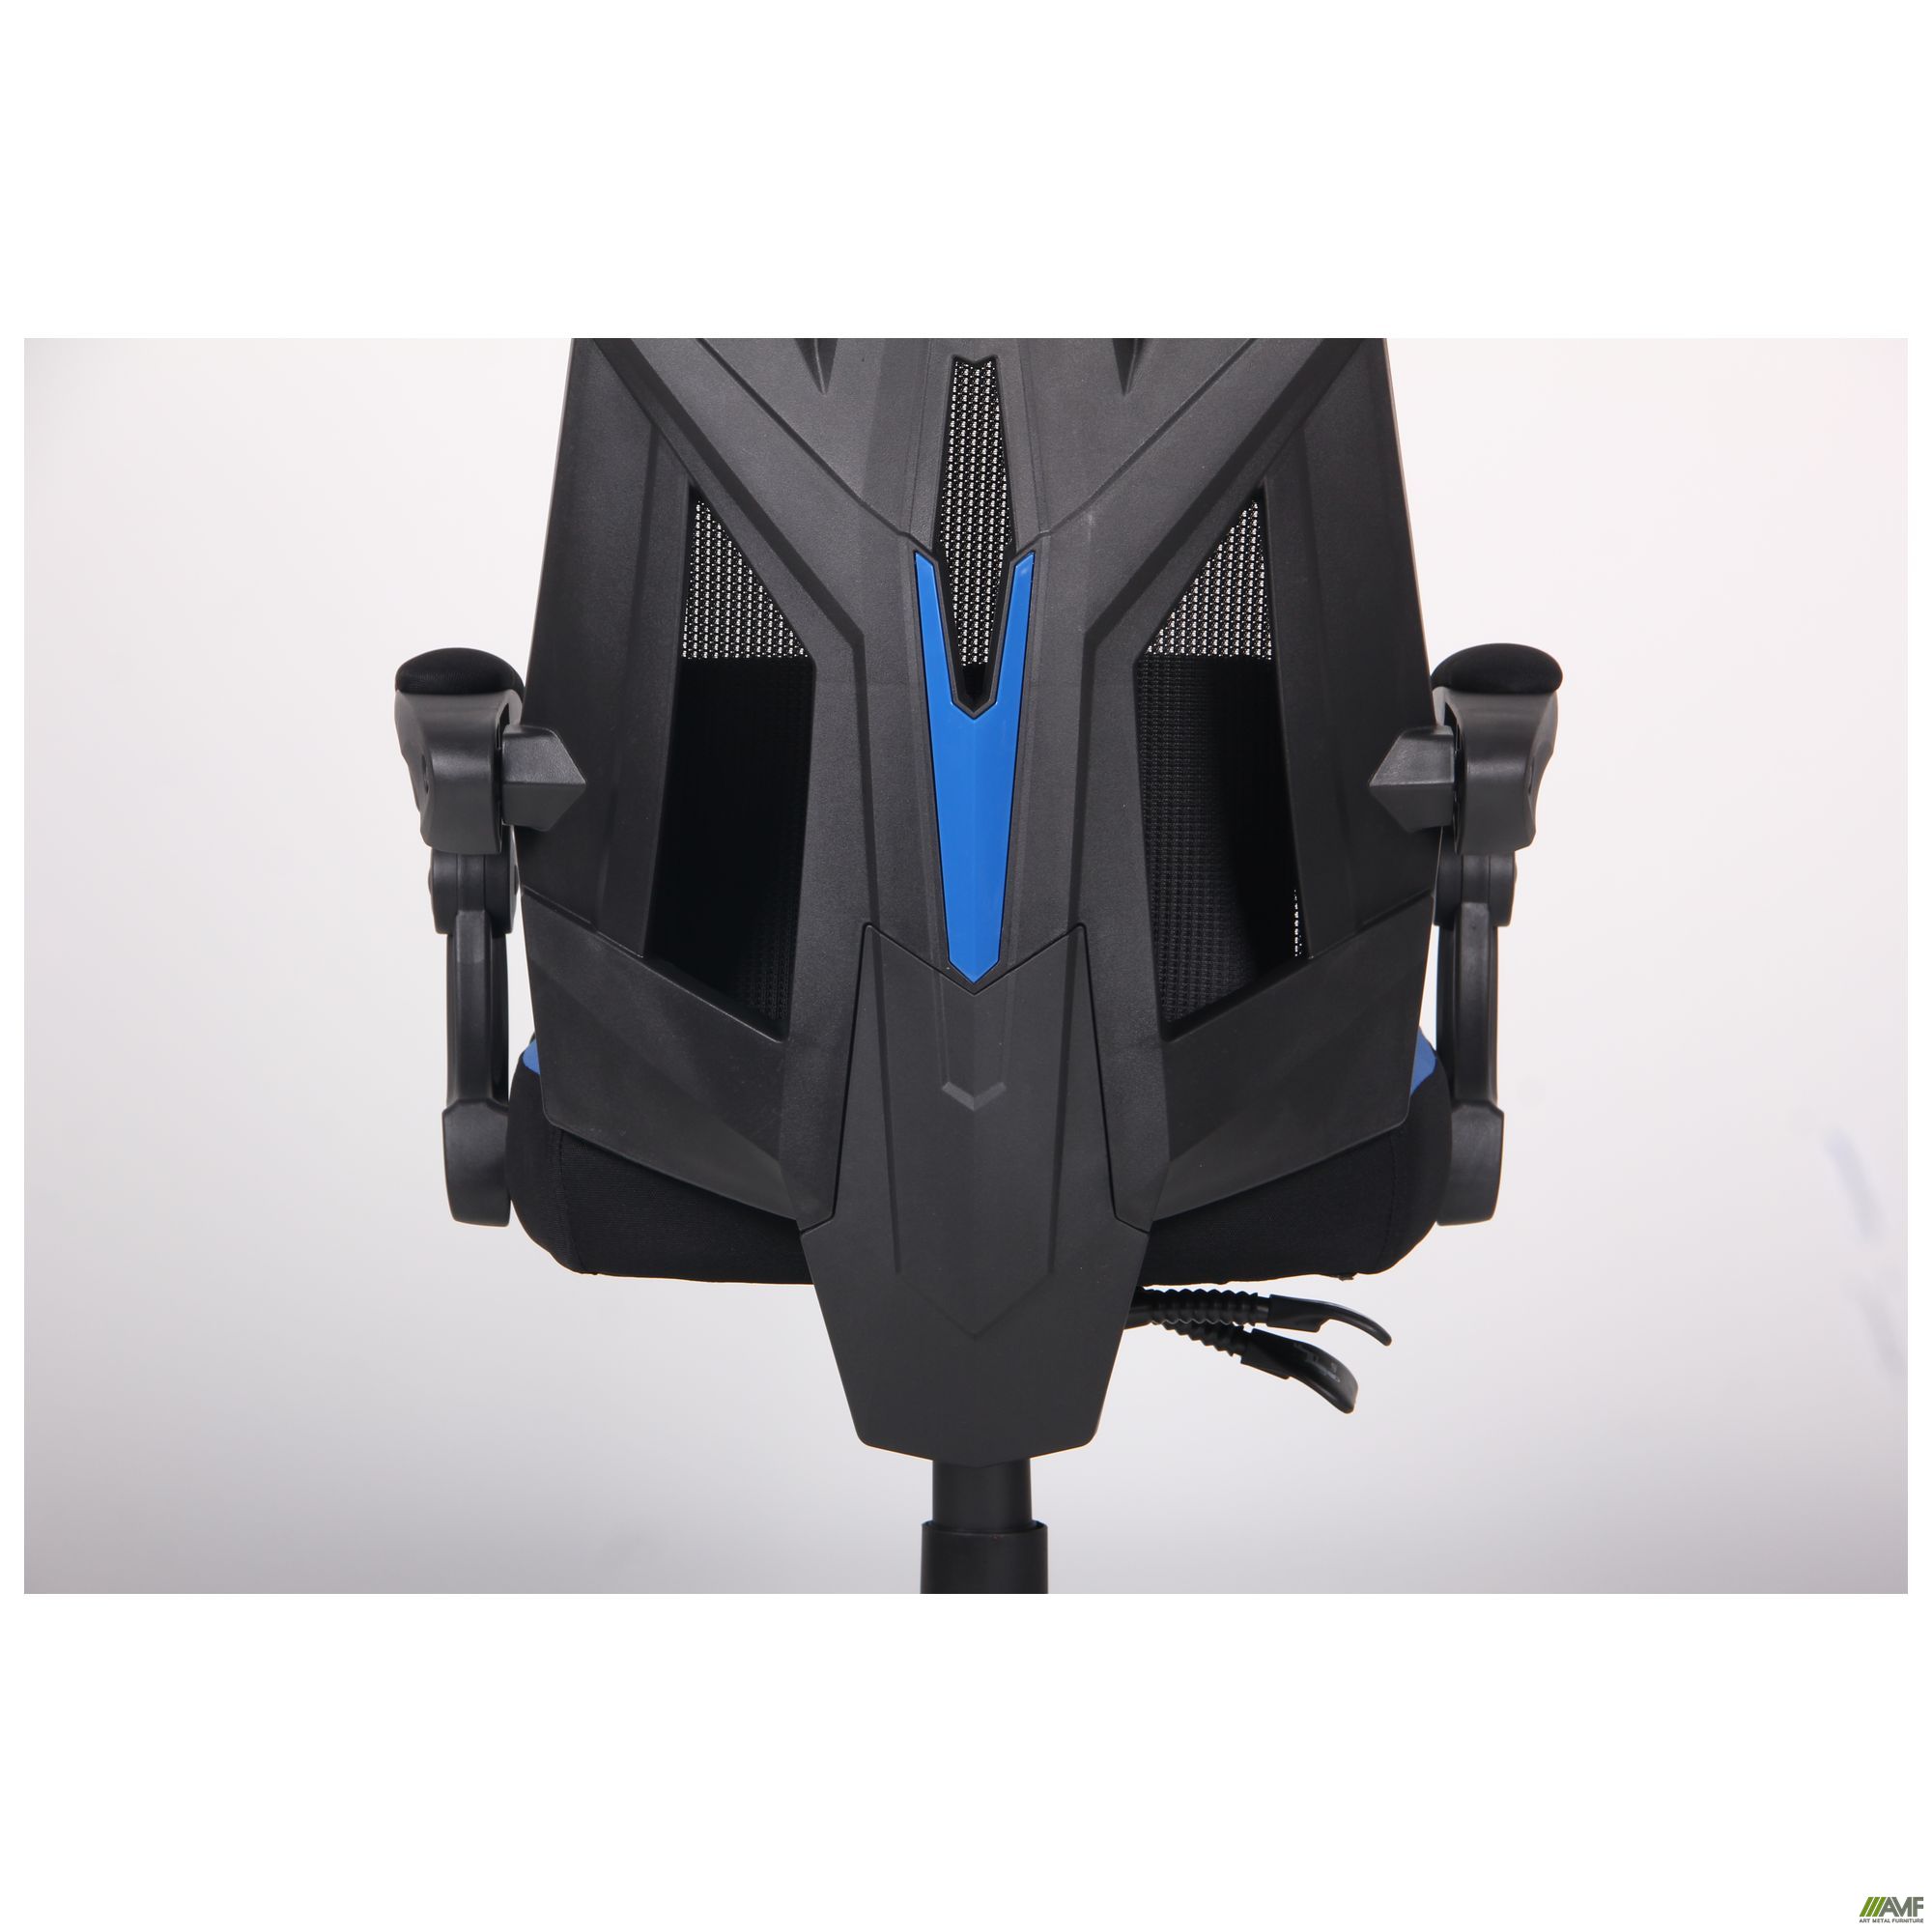 Фото 14 - Кресло VR Racer Radical Garrus черный/синий 